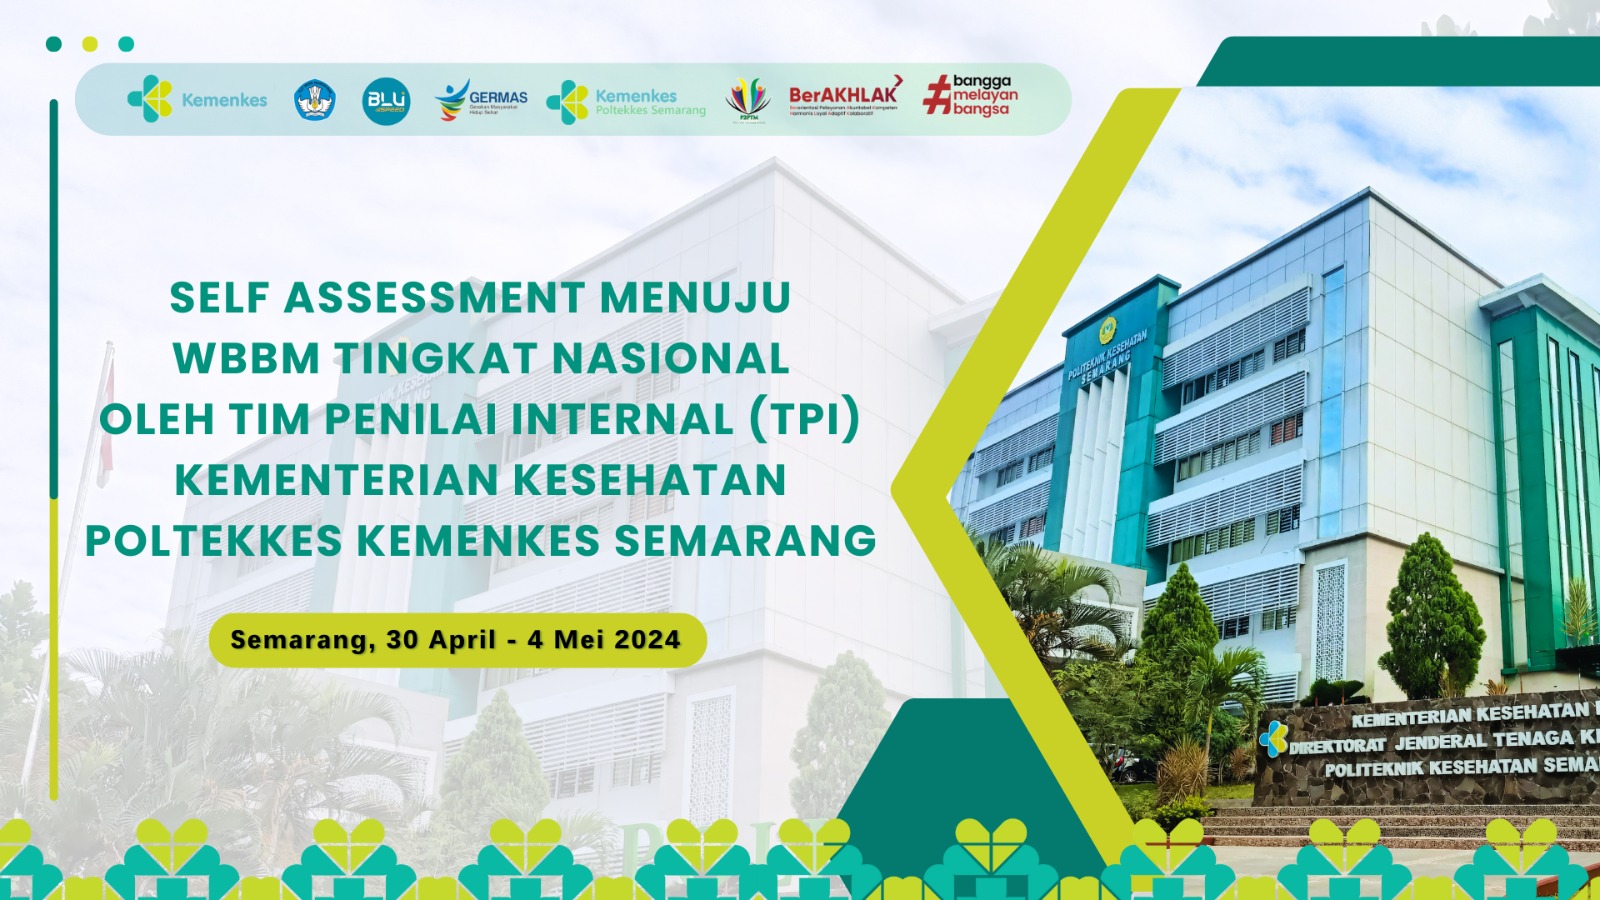 Self Assessment Menuju WBBM Tingkat Nasional oleh Tim Penilai Internal (TPI) Kementerian Kesehatan Poltekkes Kemenkes Semarang